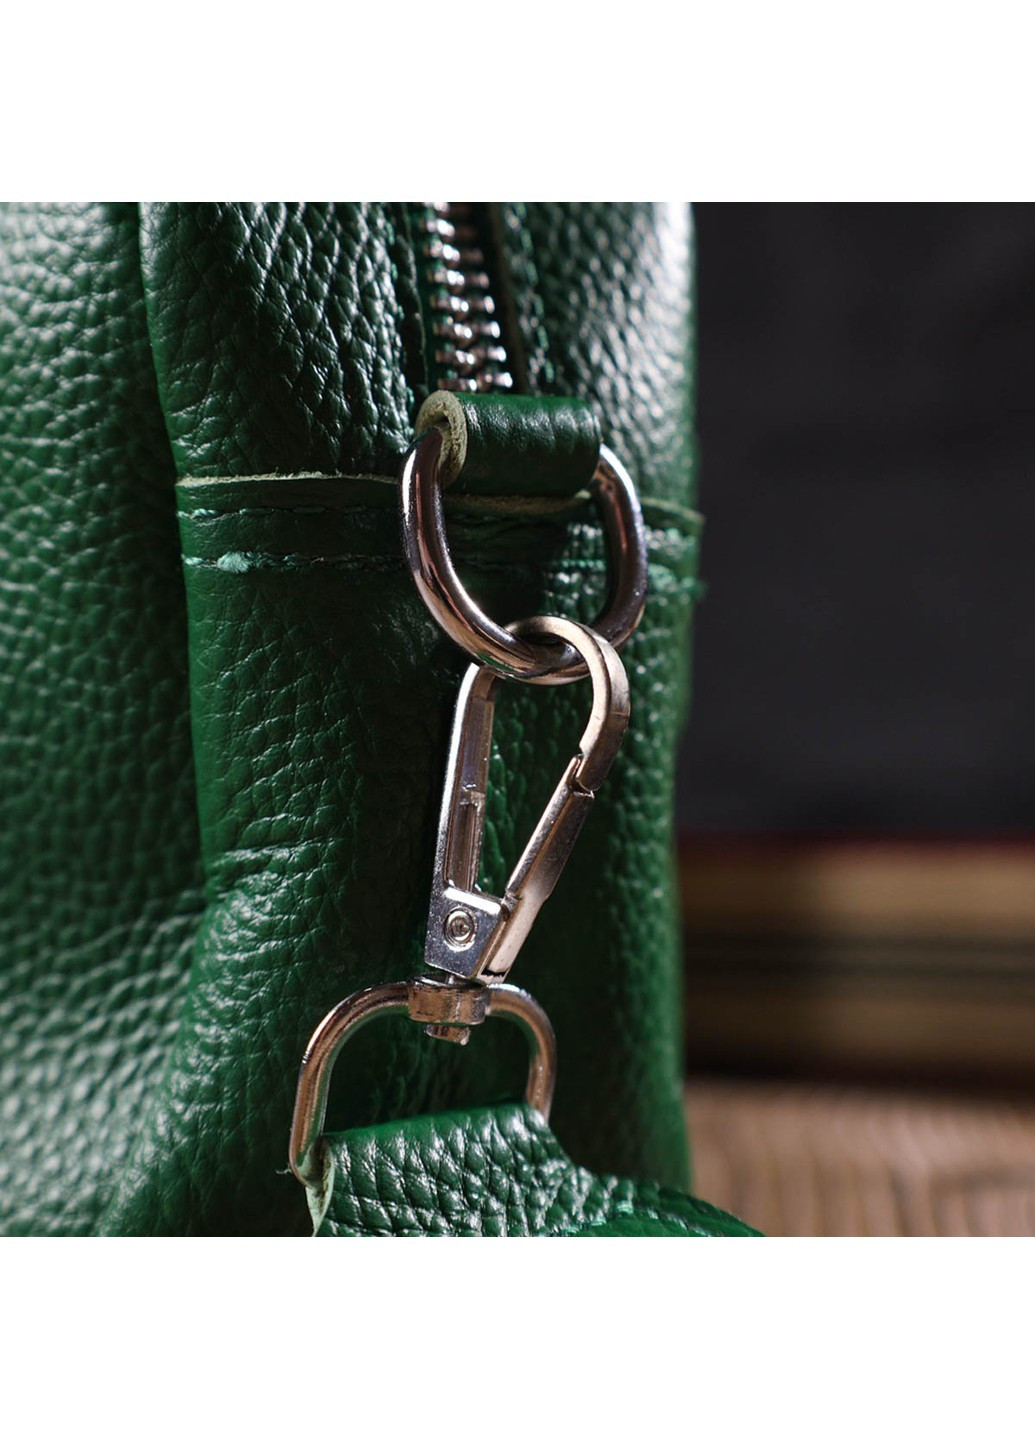 Современная женская сумка на плечо из натуральной кожи 22120 Зеленая Vintage (260360847)